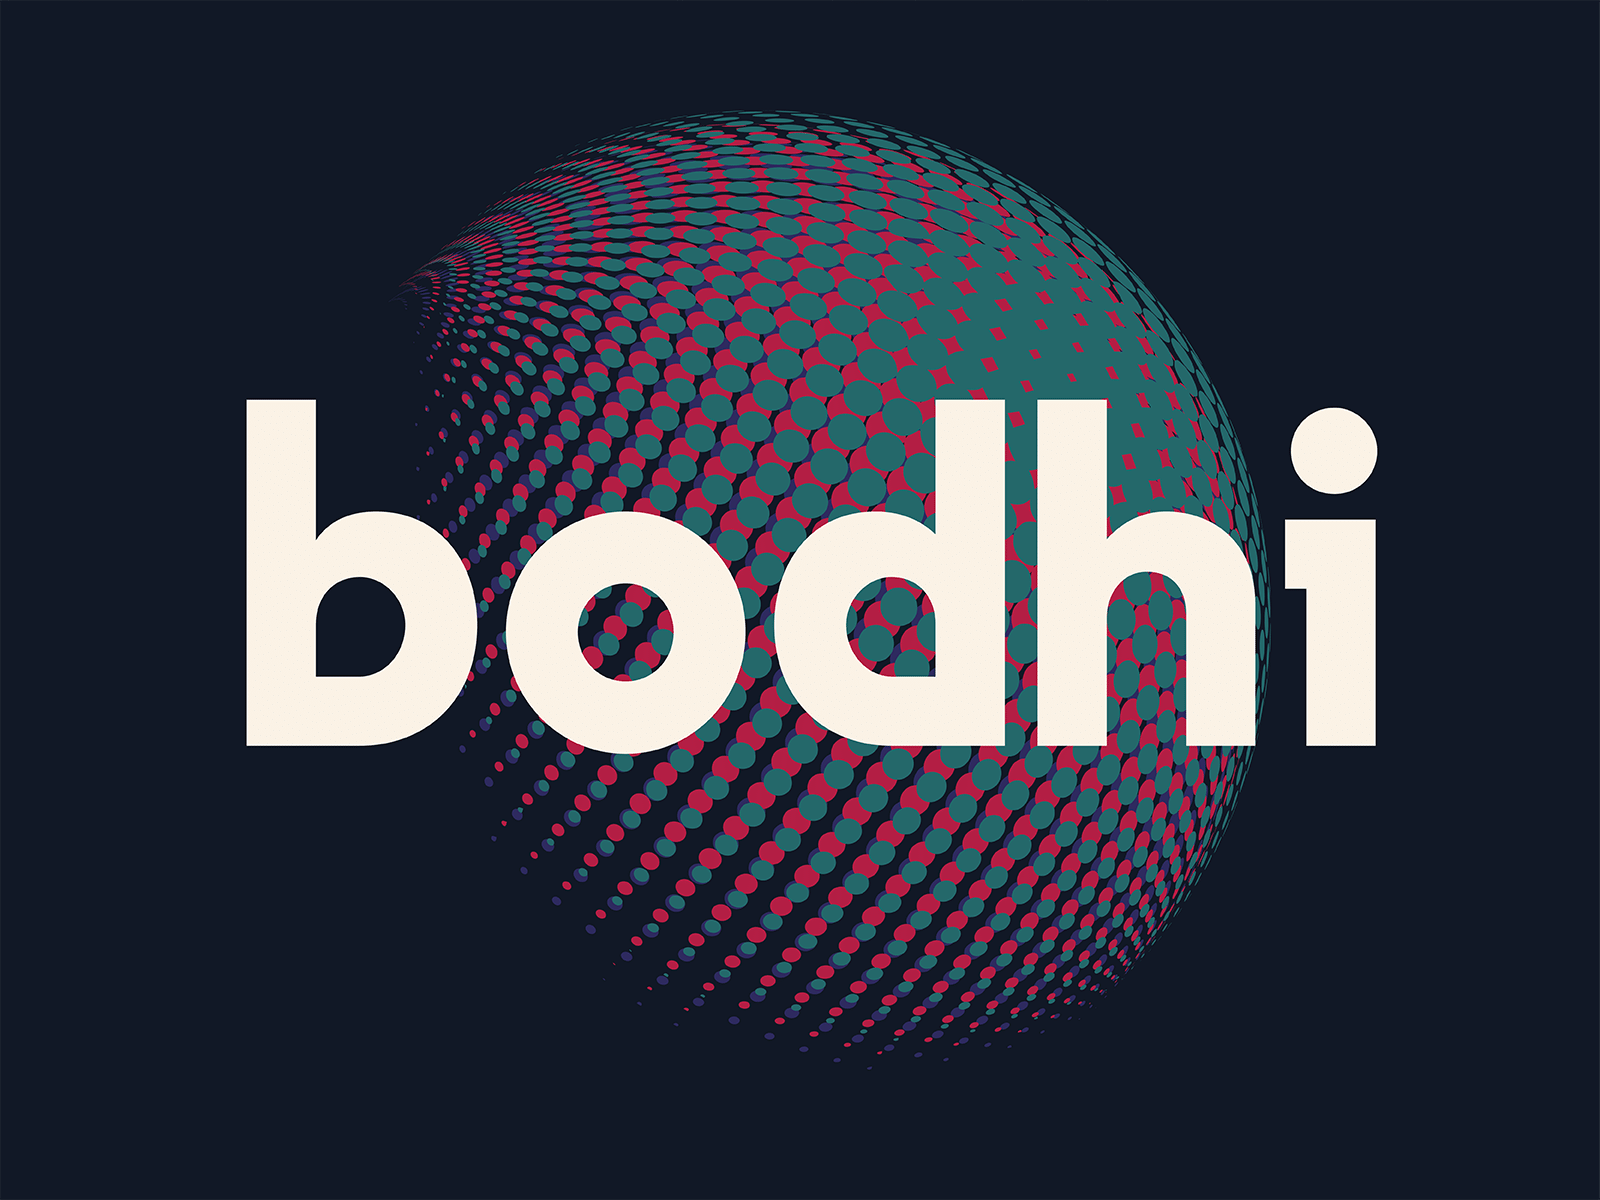 Bodhi